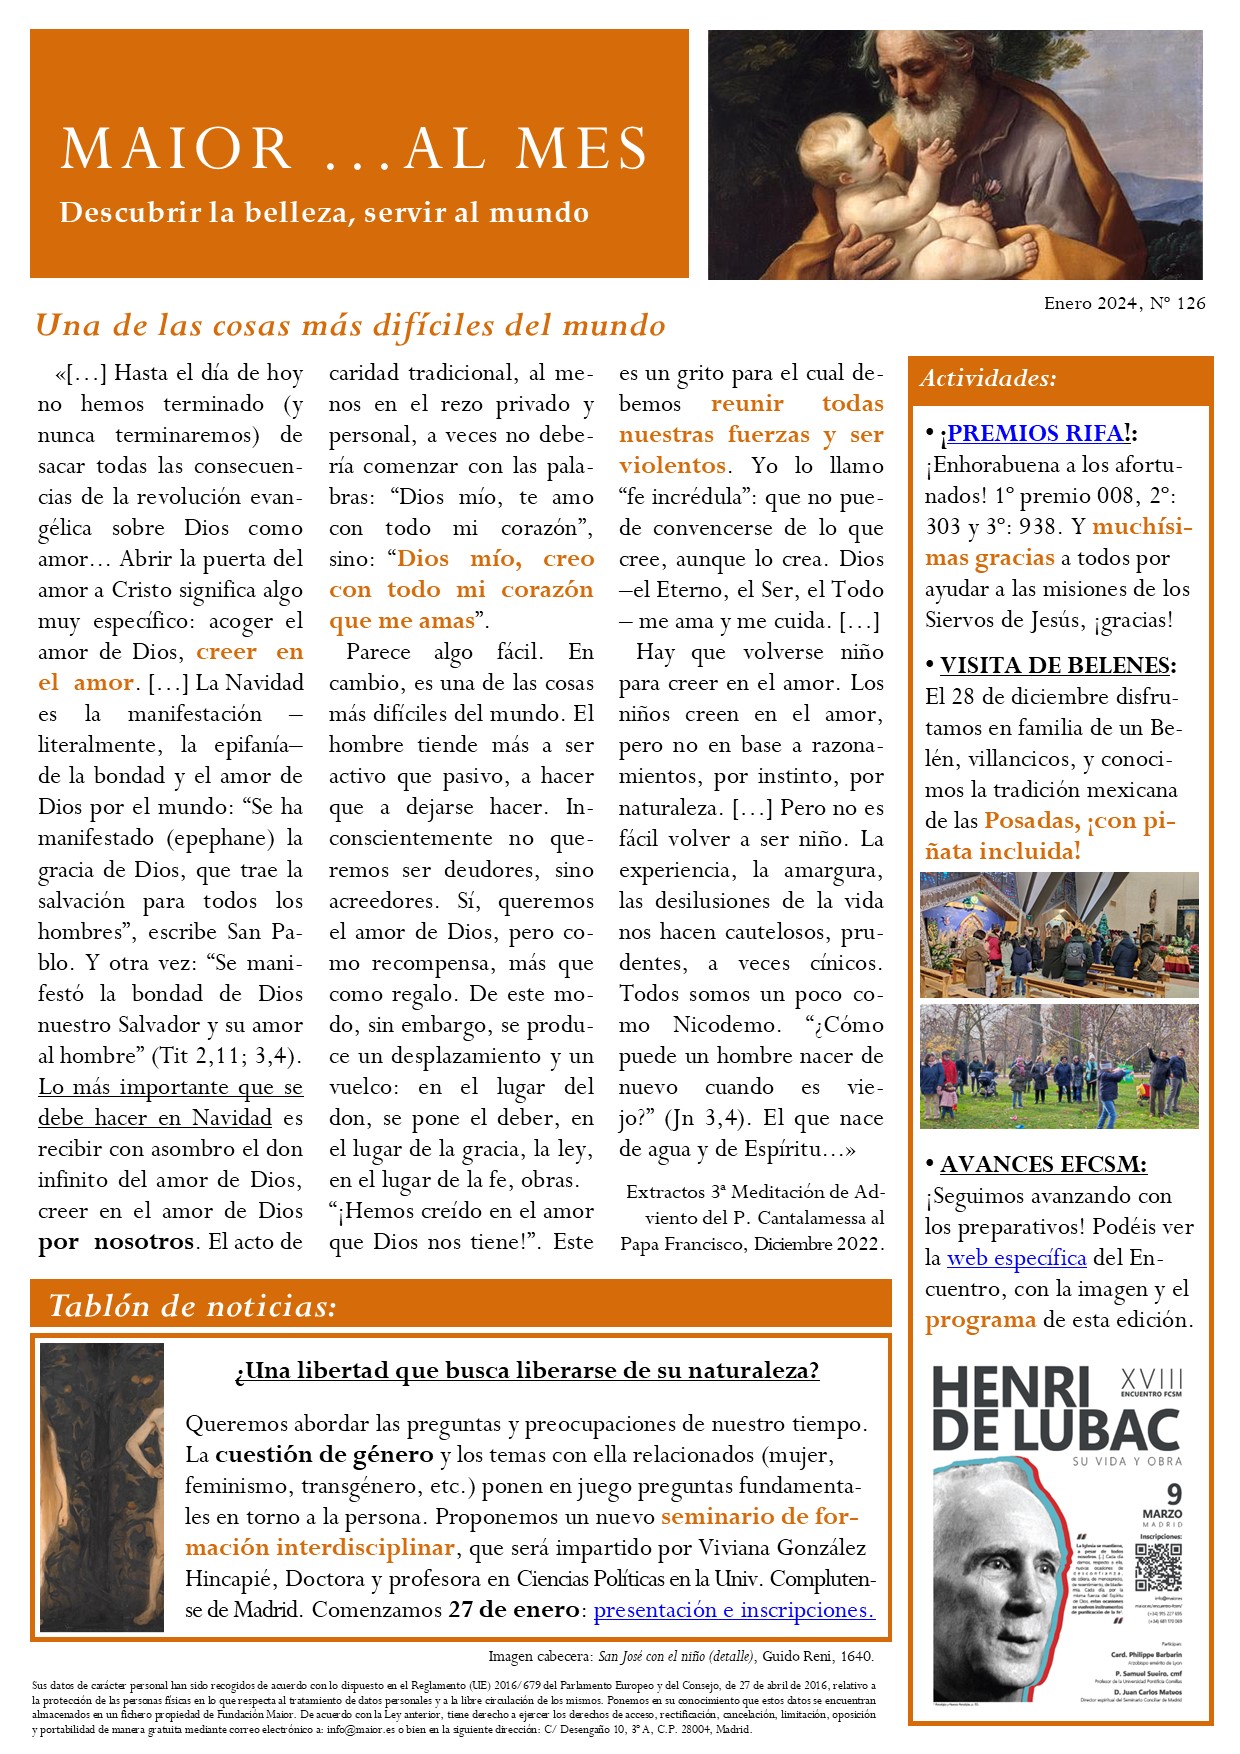 Boletín mensual de noticias y actividades de la Fundación Maior. Edición de enero 2024